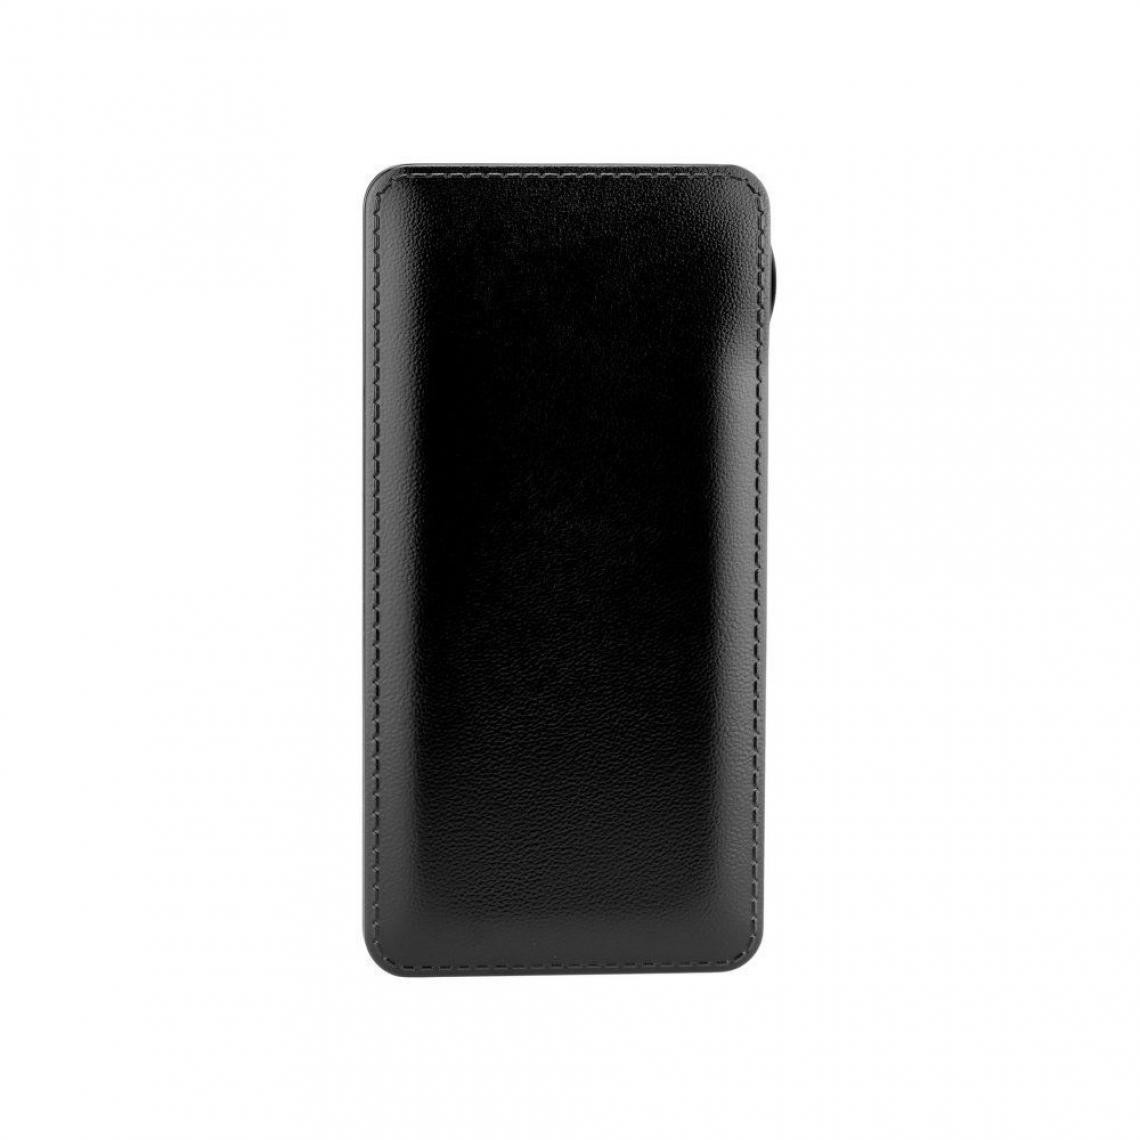 Ozzzo - Chargeur batterie externe 30000 mAh powerbank ozzzo noir pour NOKIA 3.1 Plus - Autres accessoires smartphone